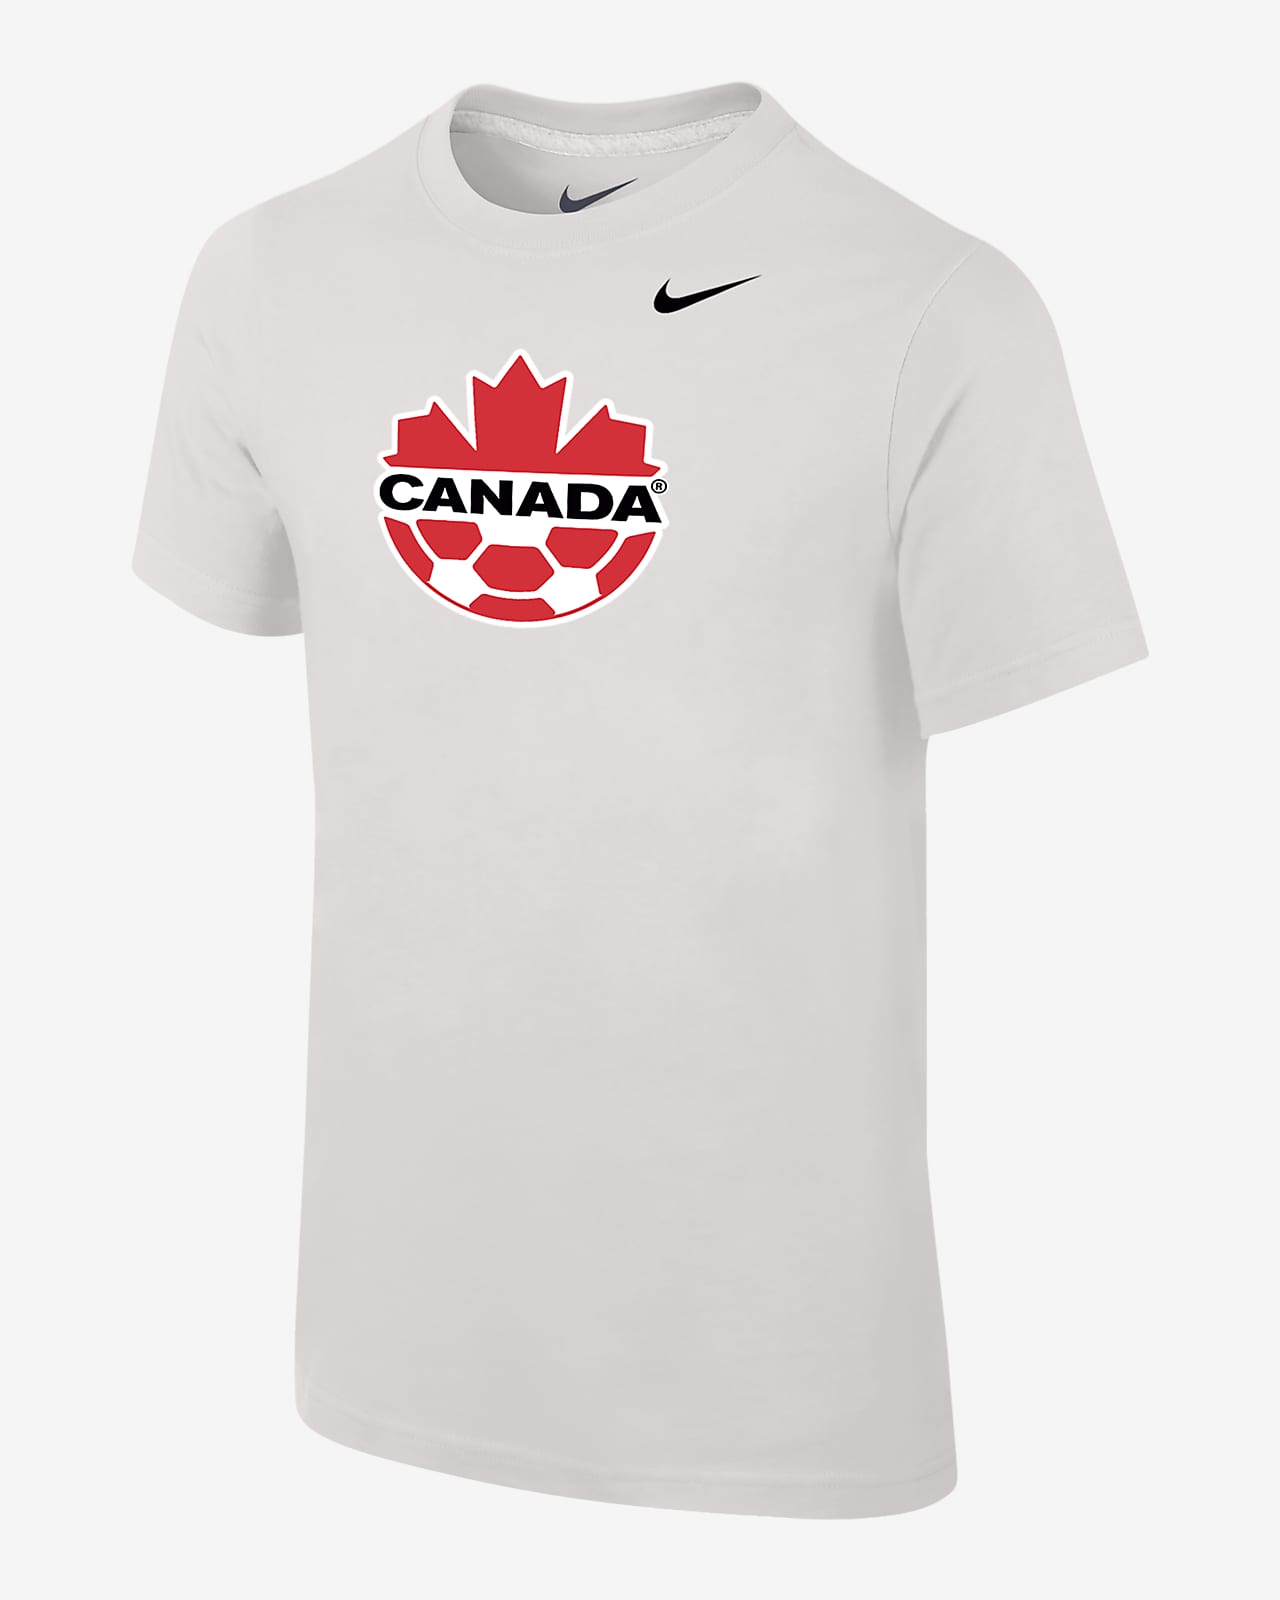 Canada Big Kids' Nike Core T-Shirt